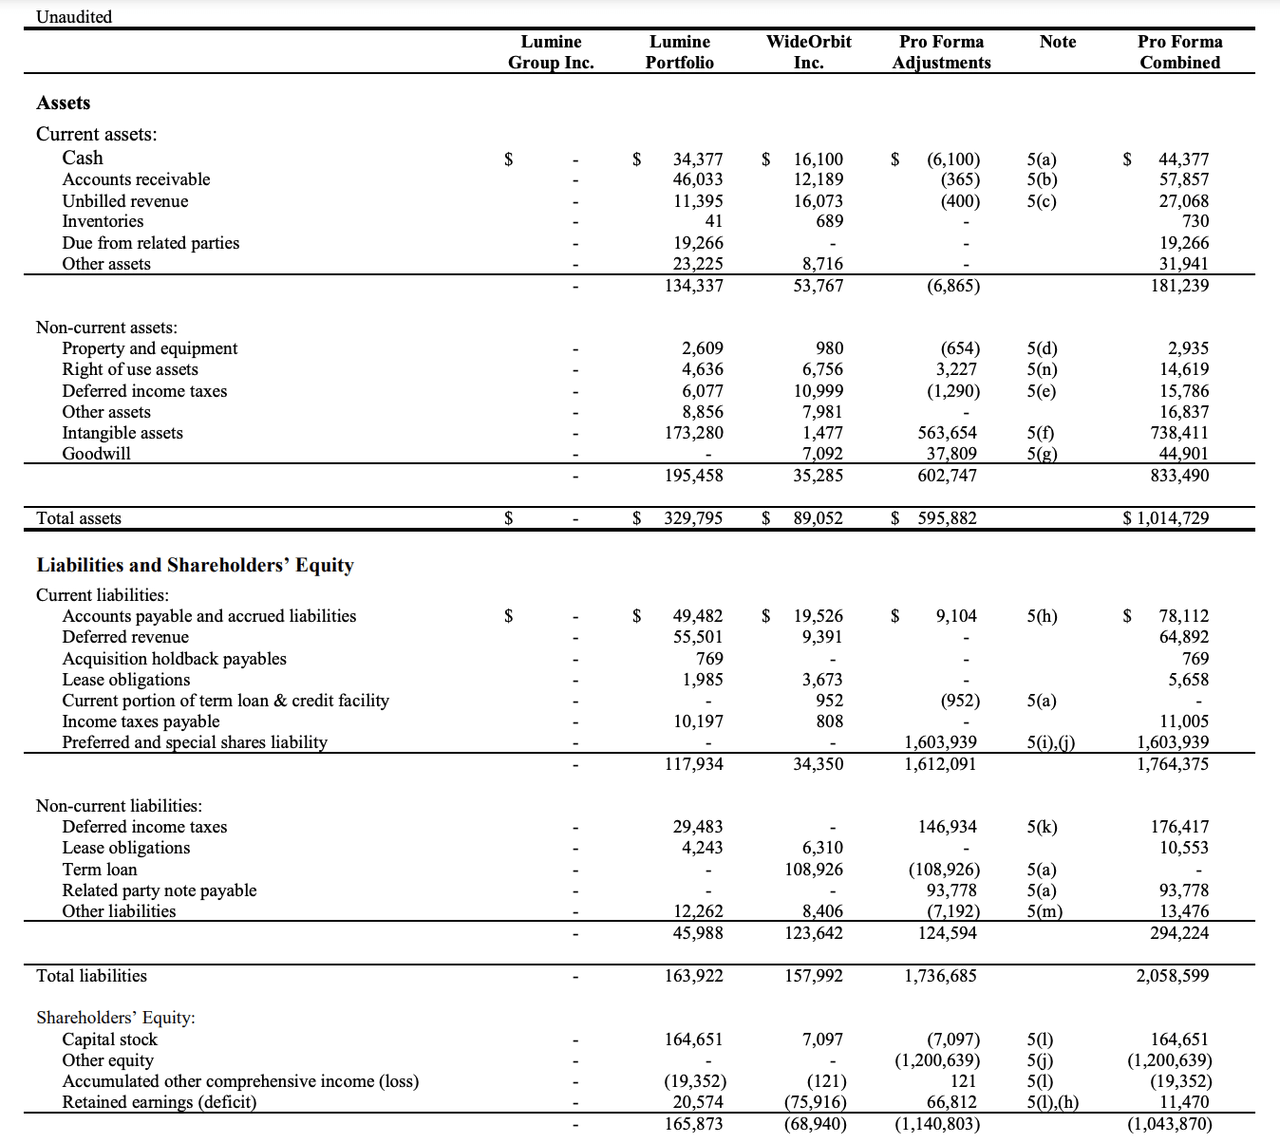 Lumine's balance sheet